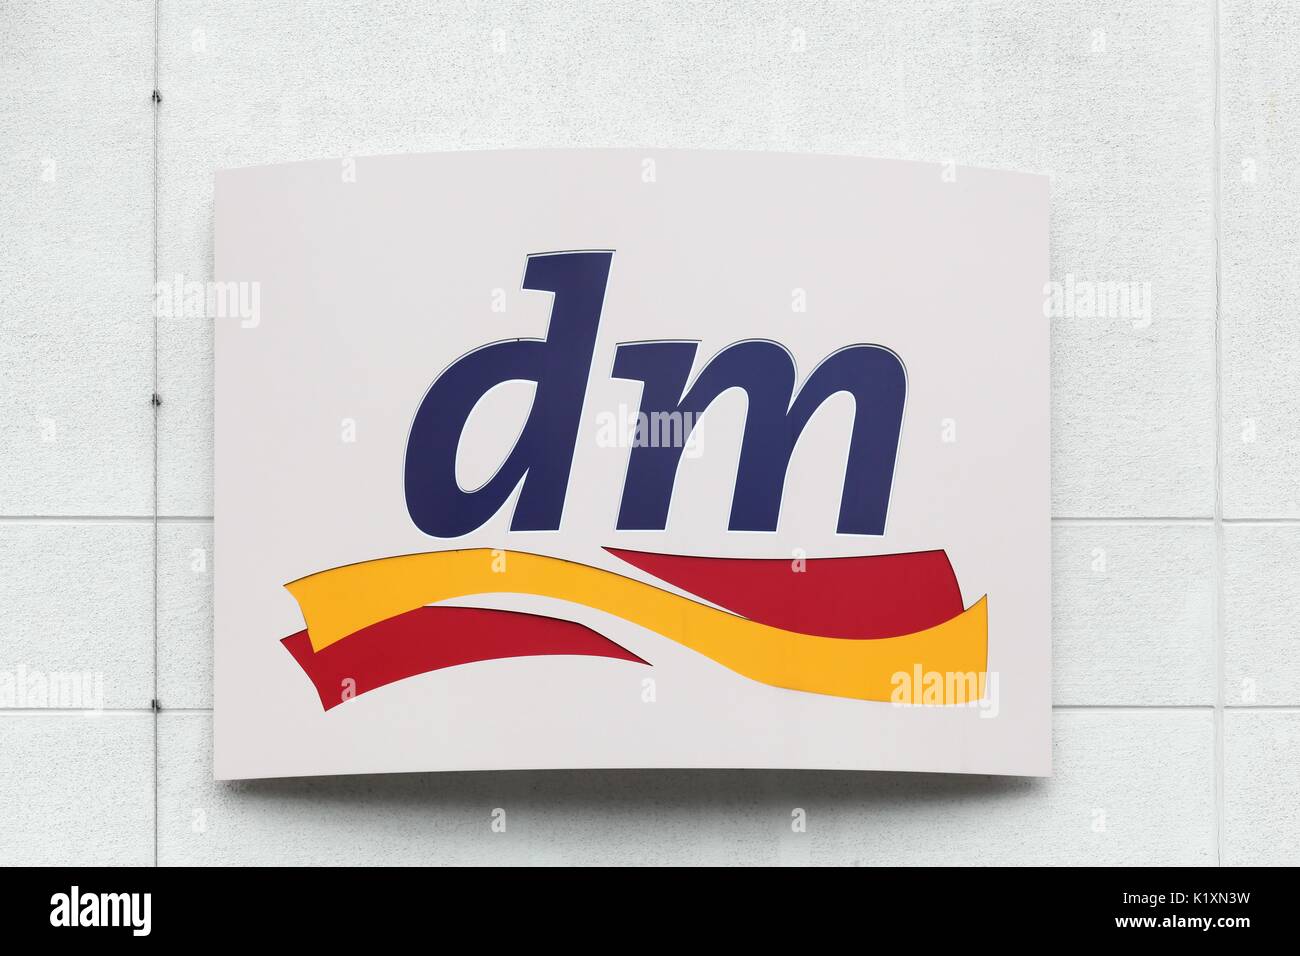 Frechen, Germania - 22 luglio 2017: dm logo su una parete.-Dm Drogerie Markt è una catena di negozi al dettaglio che vende prodotti cosmetici, articoli sanitari Foto Stock